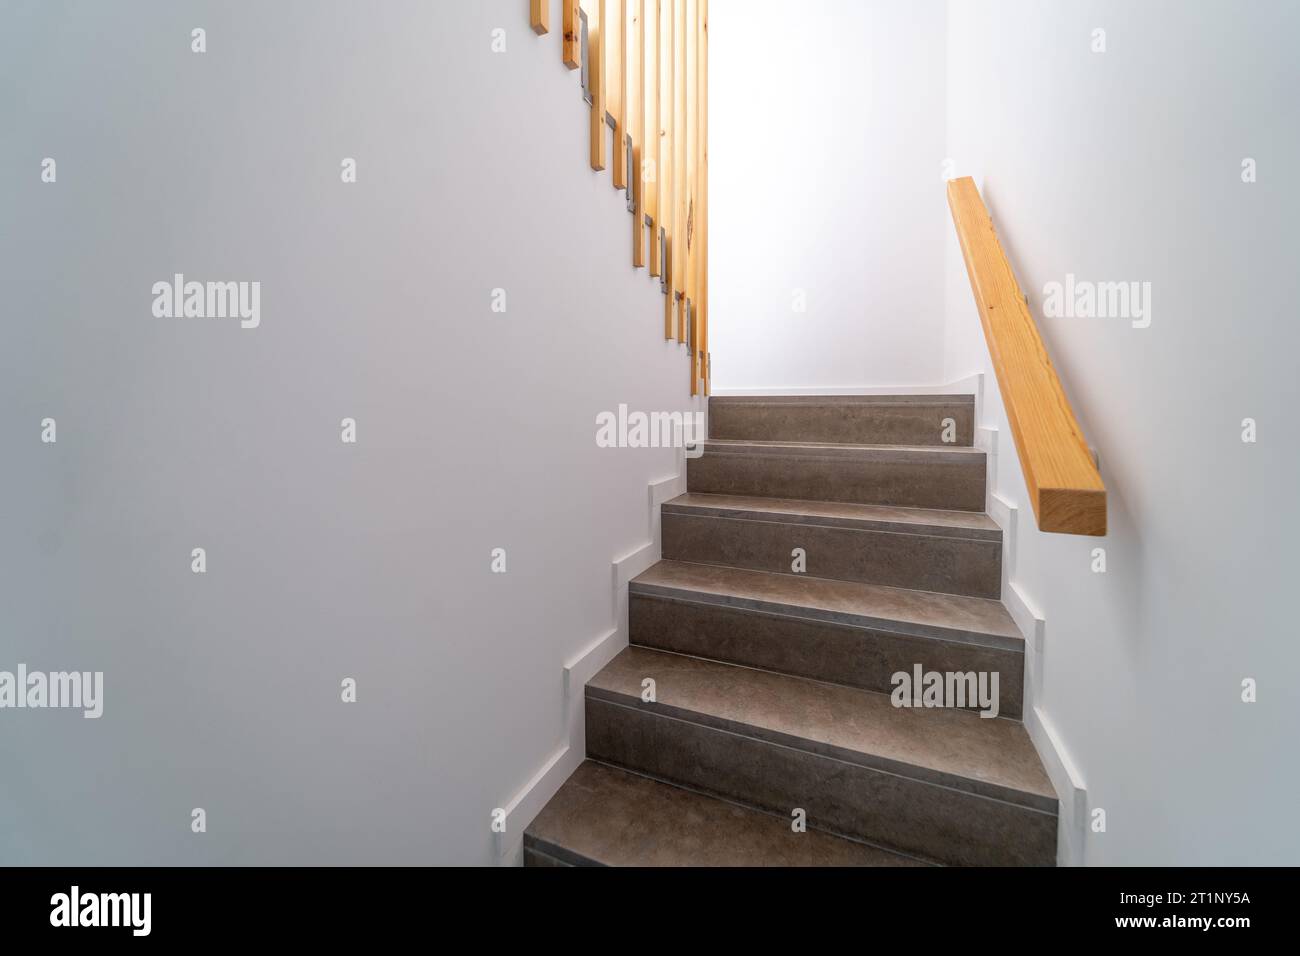 Escalier intérieur Moden en pierre. Escalier descendant. Chemin d'escalier ou escalier à l'intérieur d'une maison. Concept de conception de structure intérieure. Banque D'Images